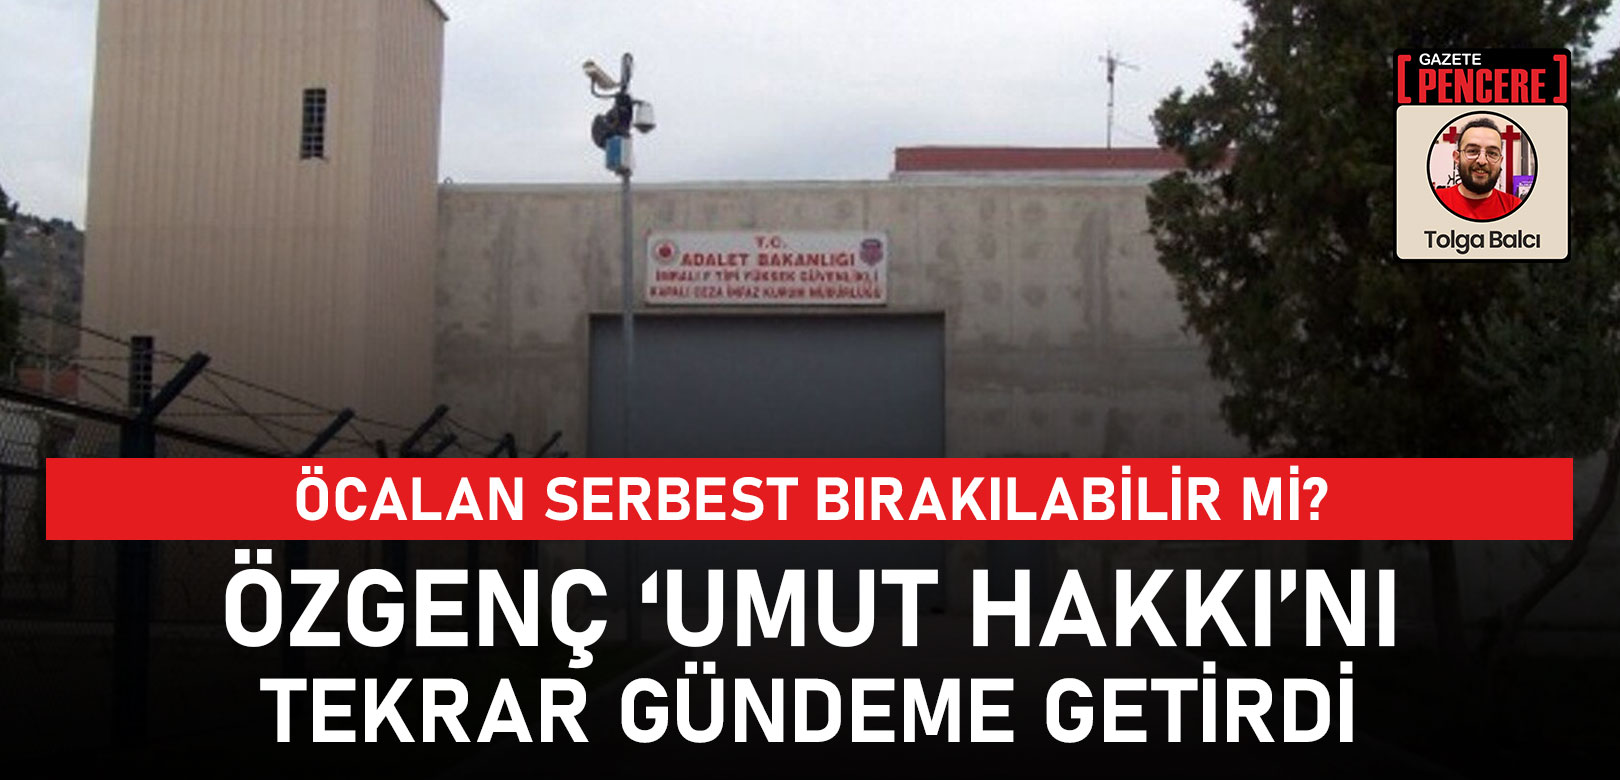 Erdoğan'ın eski danışmanı Özgenç dikkat çekti: Öcalan serbest bırakılabilir mi?